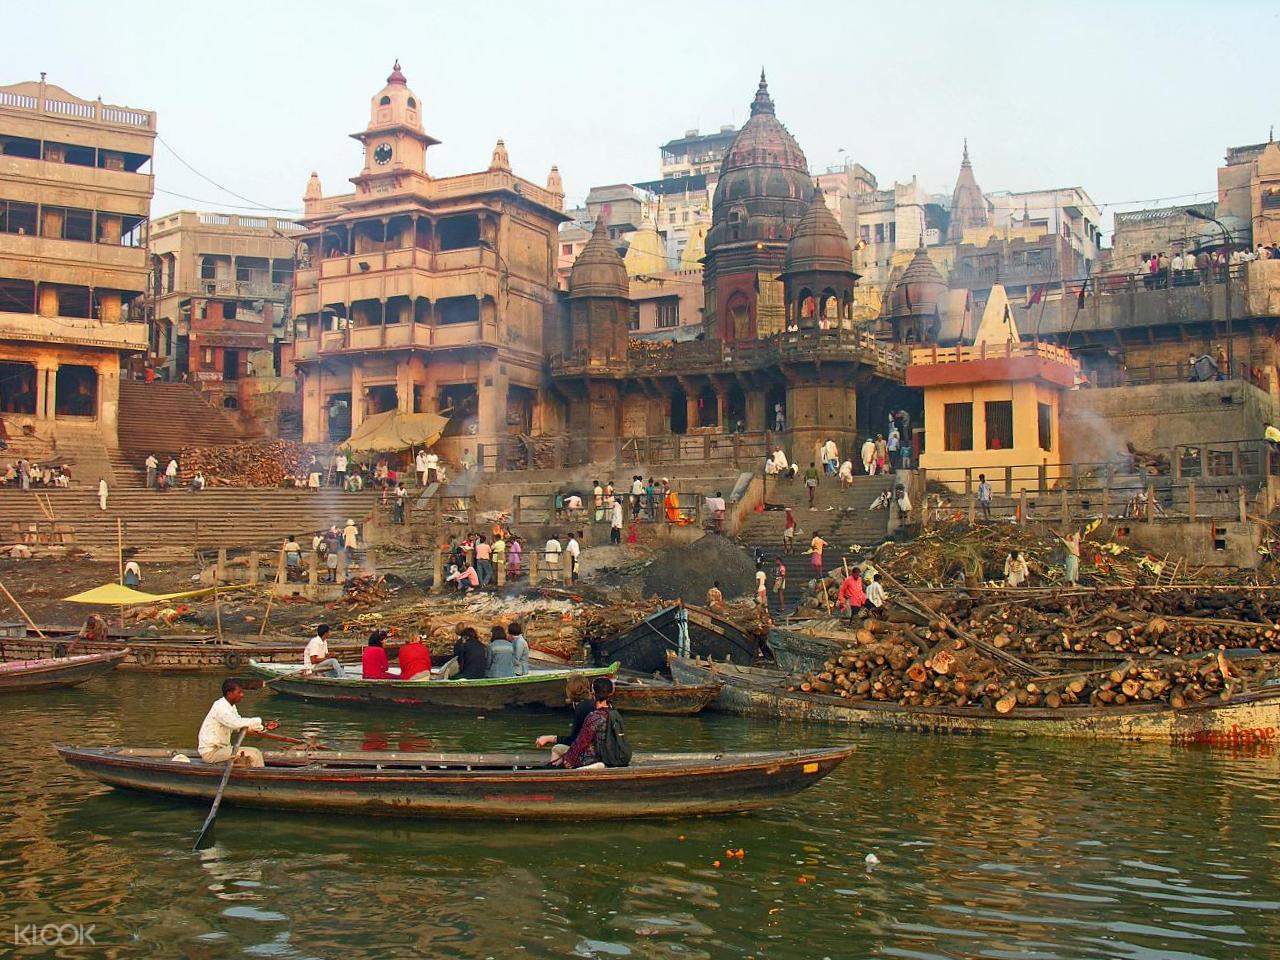 Hỏa táng trên sông Hằng tại sao lại có ý nghĩa thiêng liêng và là đặc ân đối với người dân Ấn Độ? - Ảnh 2